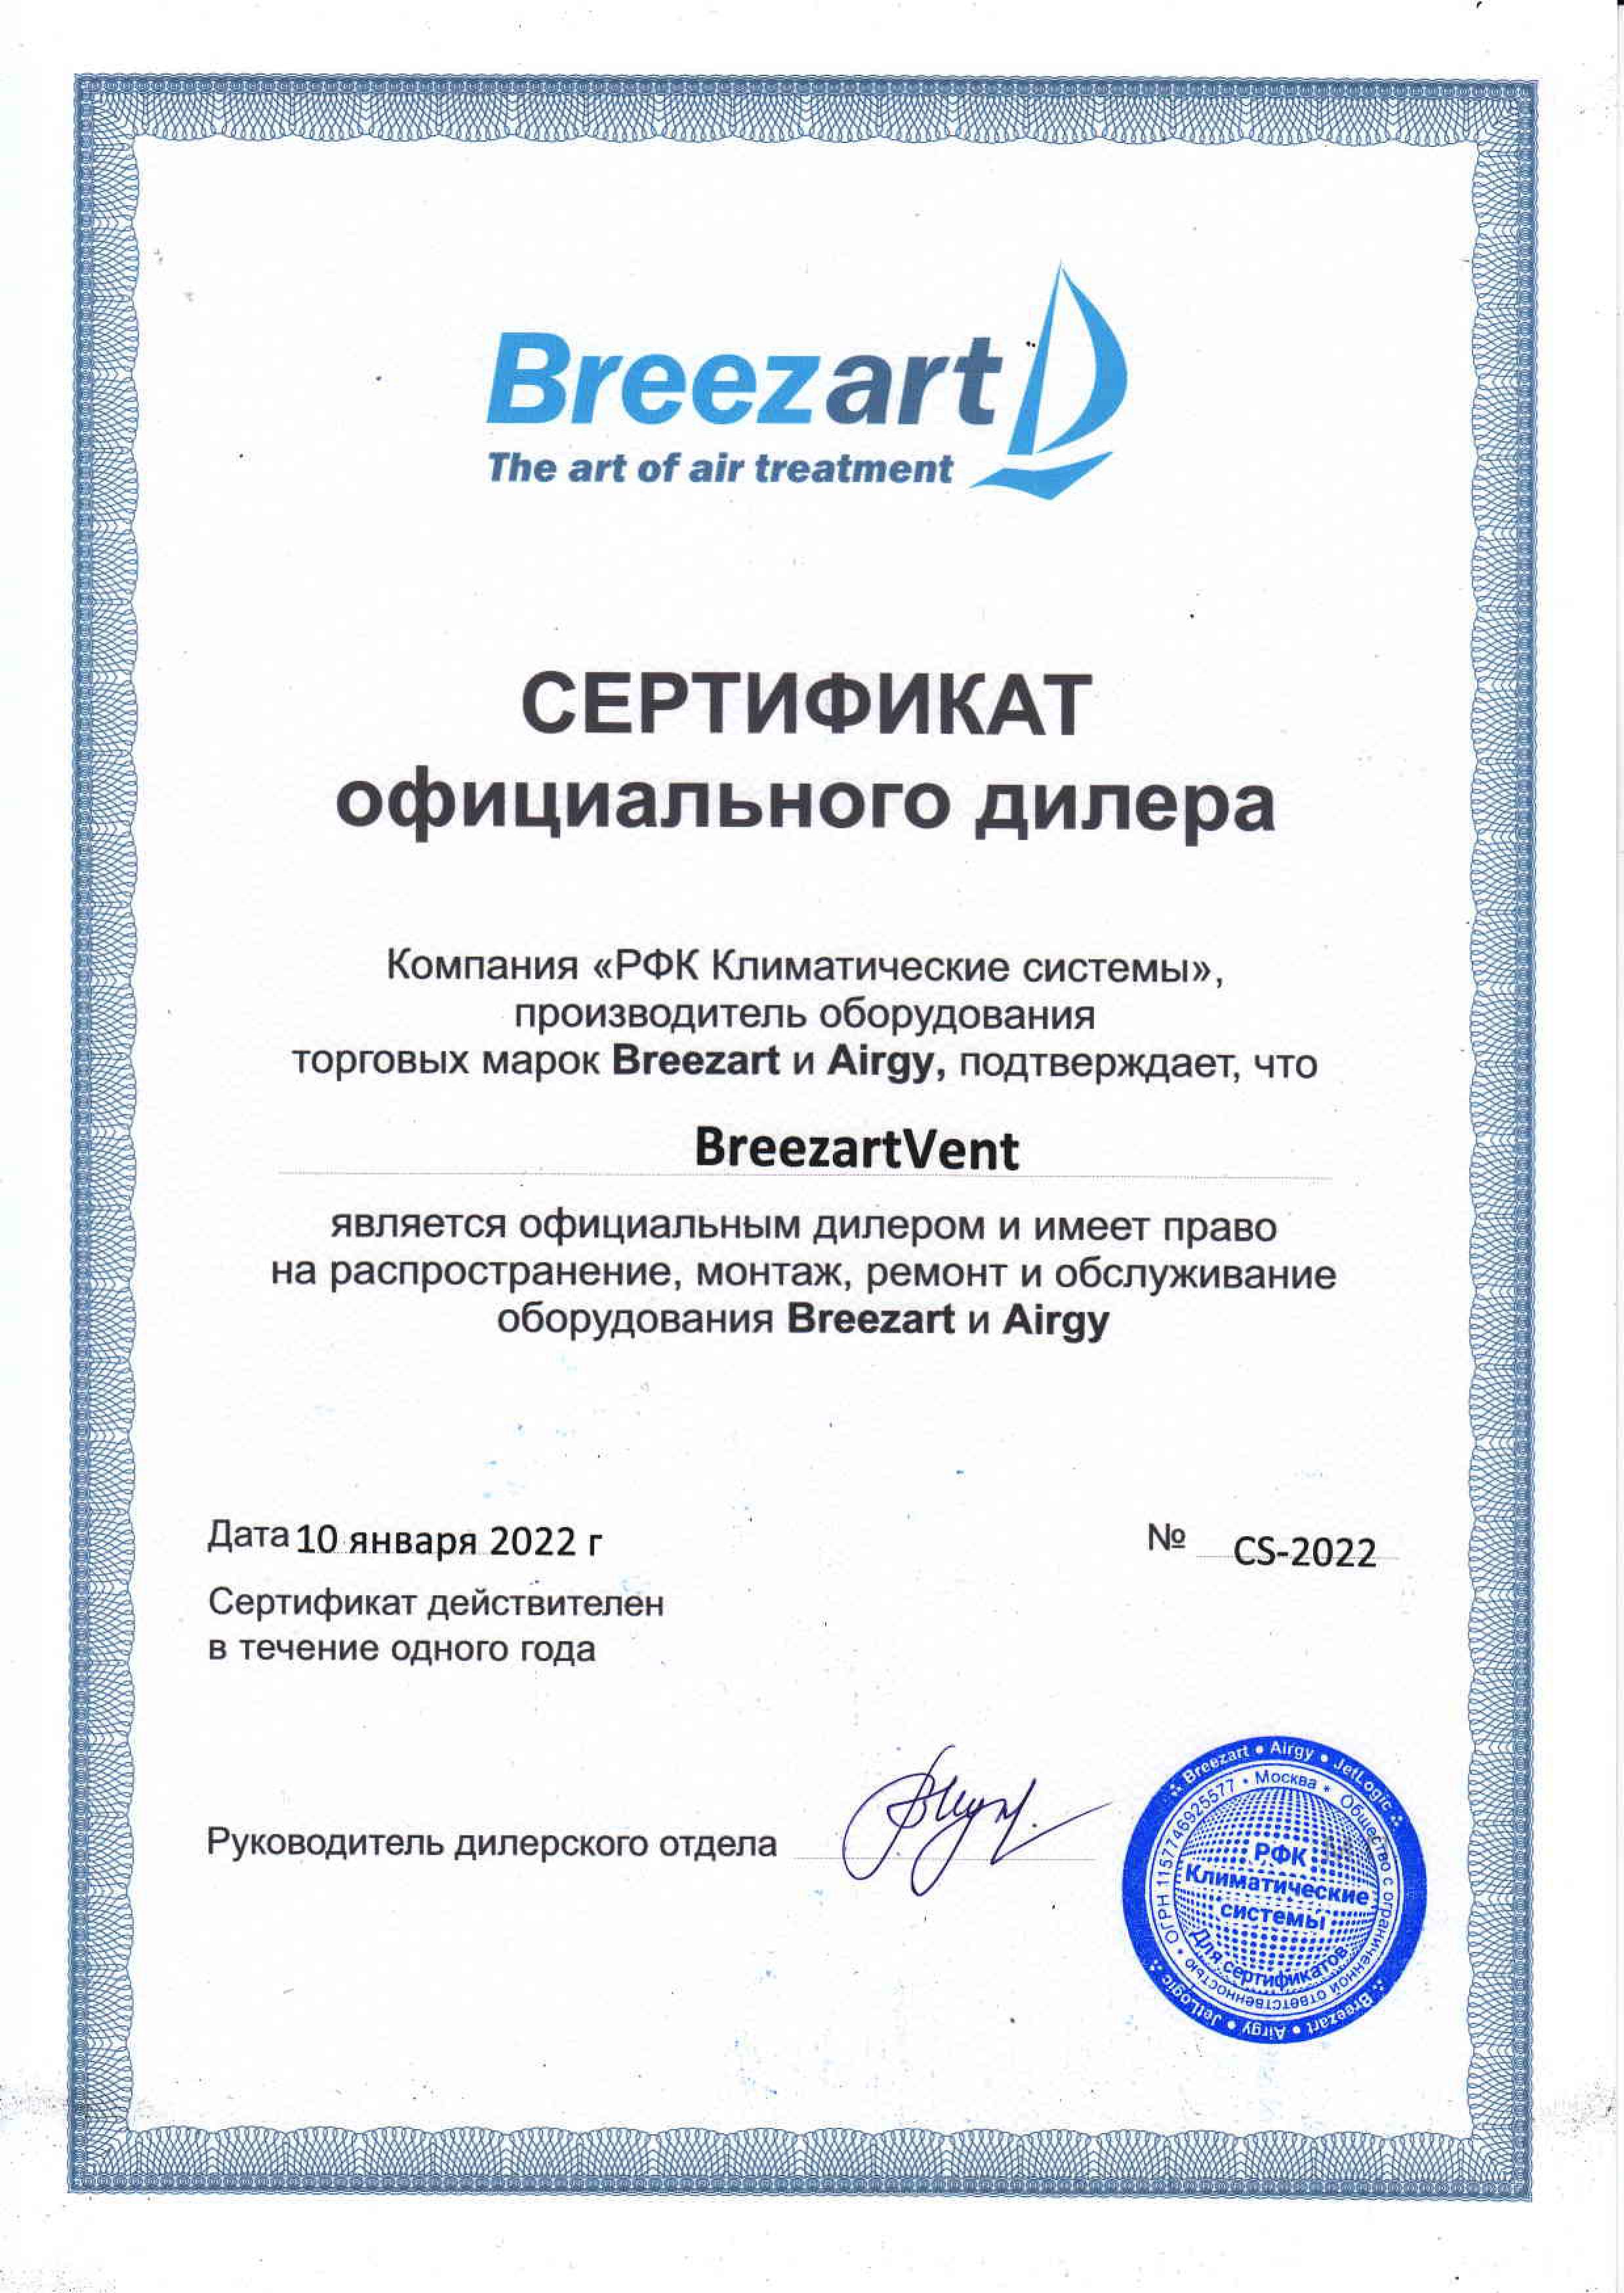 Сертификат официального дилера Breezart